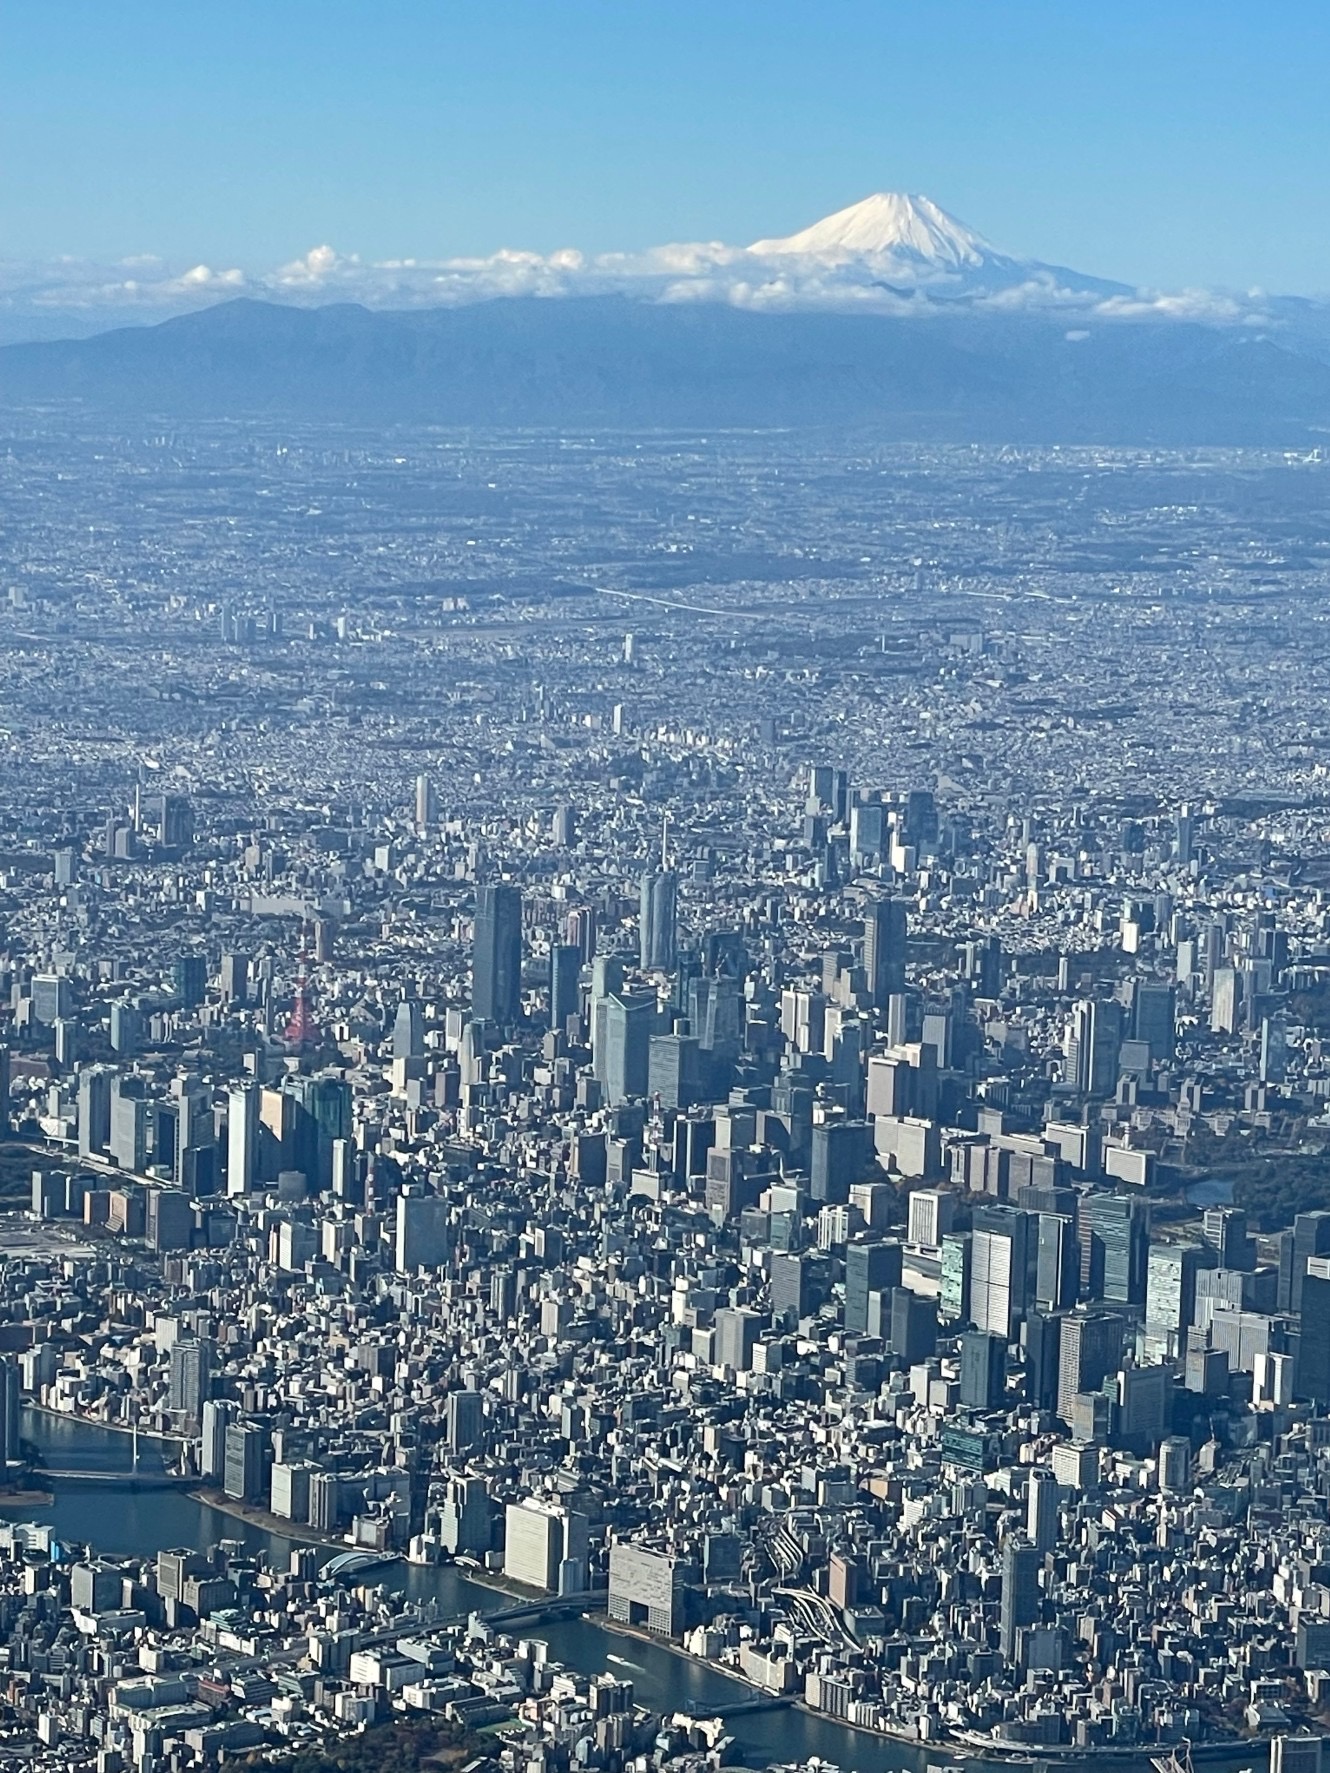 機上退屈日記「空の上から見た富士山が素晴らし過ぎた。雲の上からボンジュール」